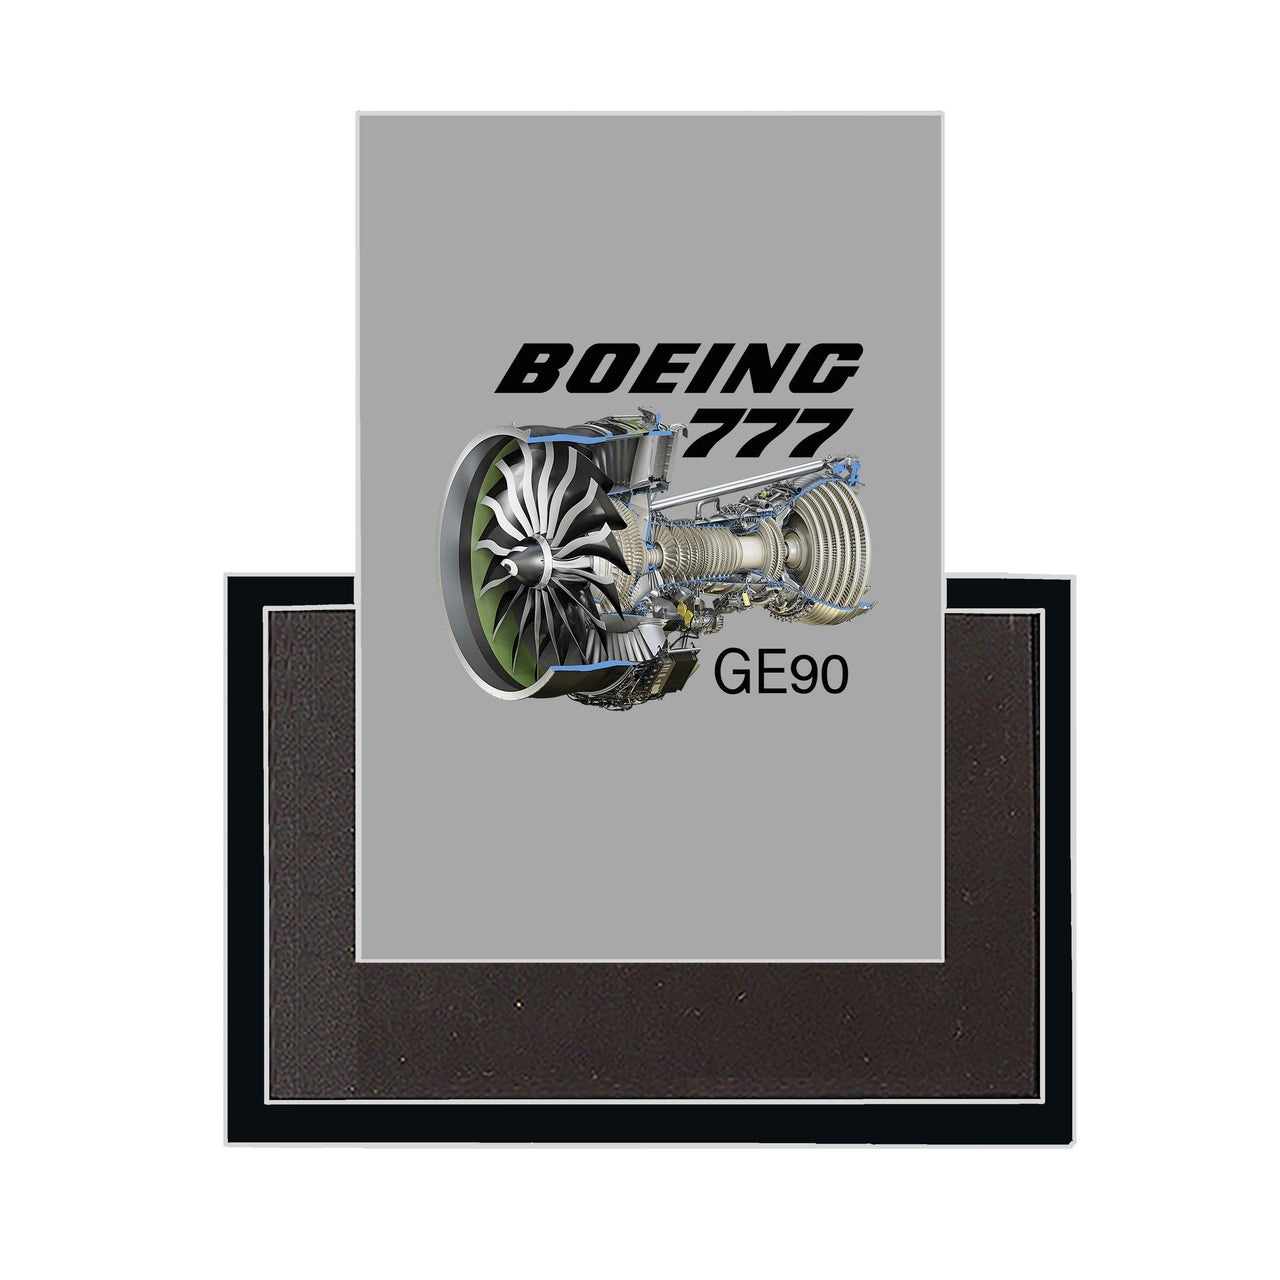 Boeing 777 & GE90 Engine Designed Magnets